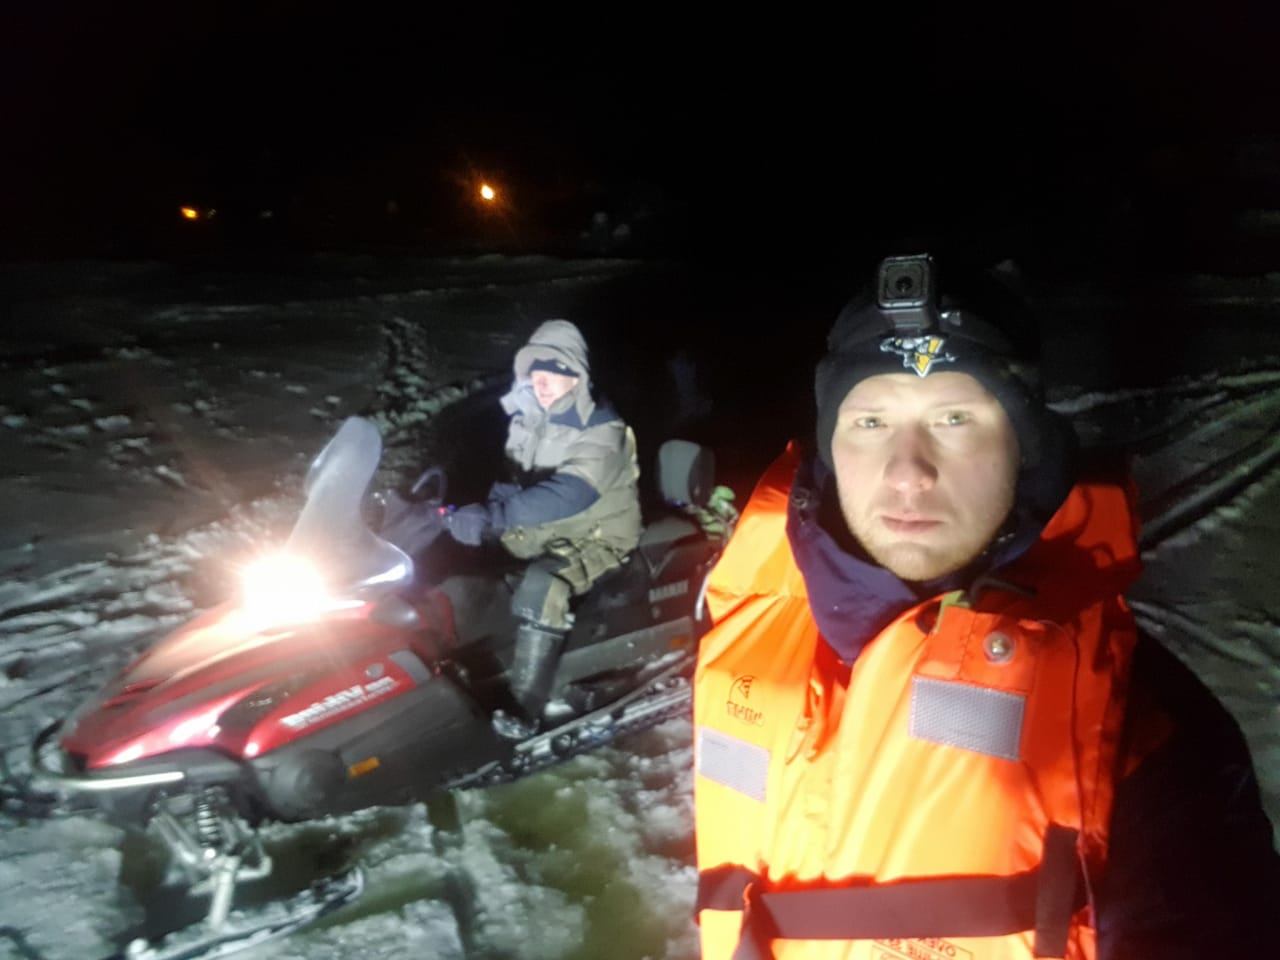 Спасатели из Дубны оказали помощь двум рыбакам, застрявшим на льдине на сломанном снегоходе